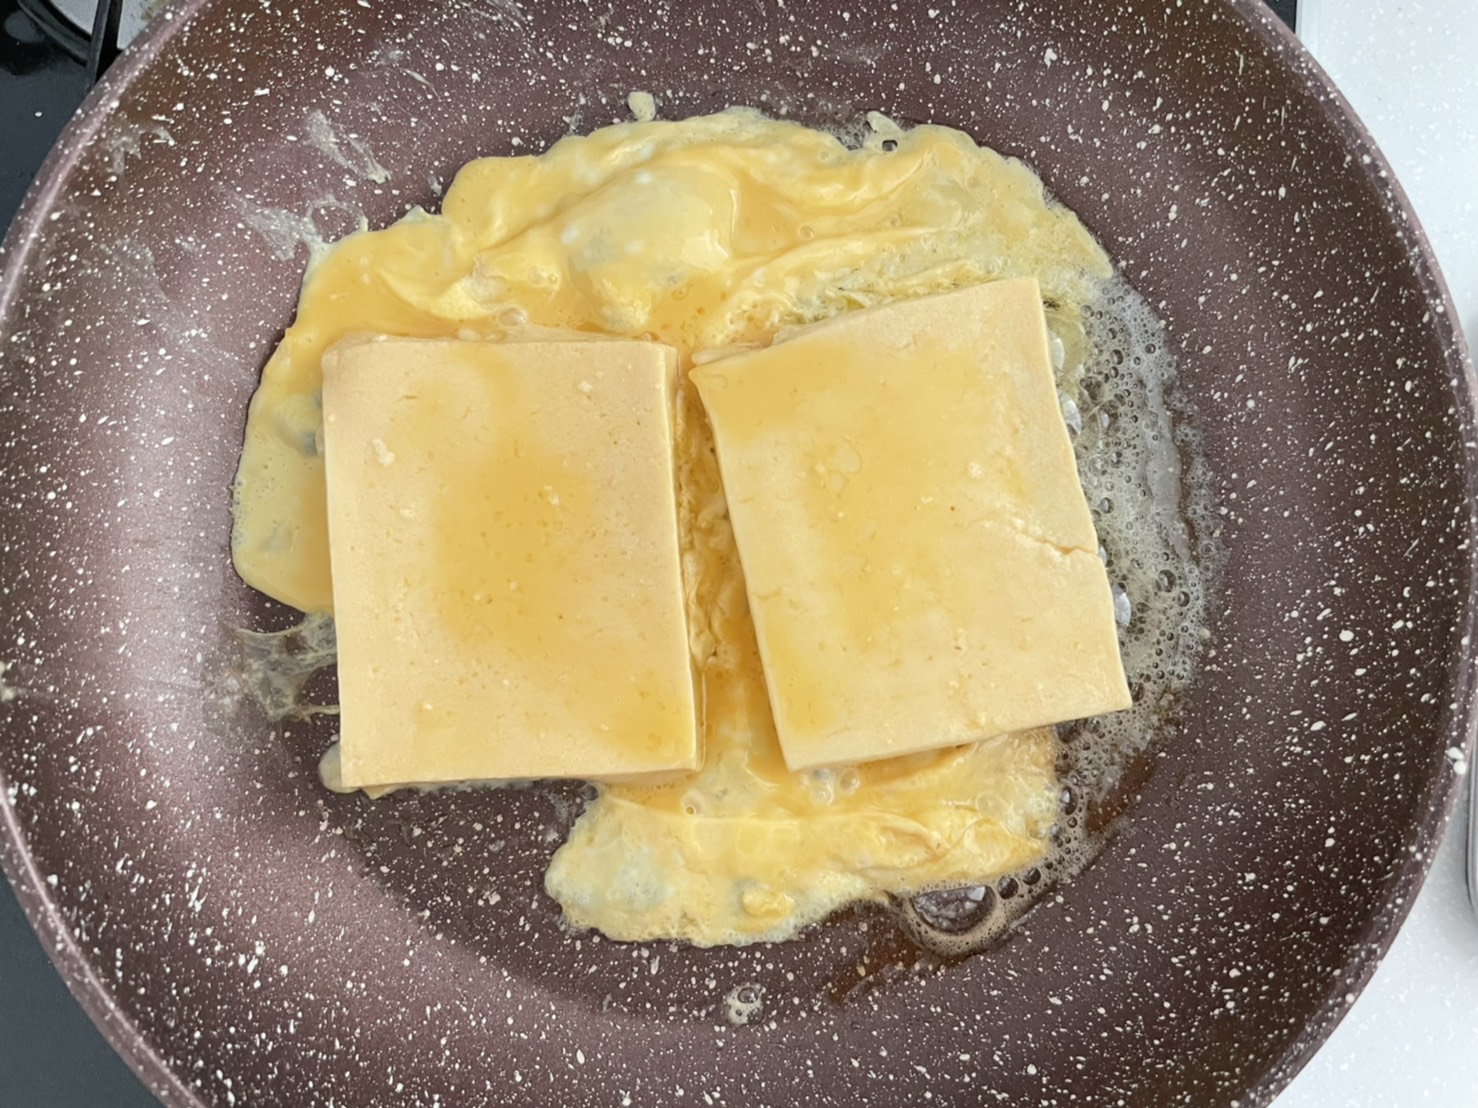 高野豆腐のフレンチトースト